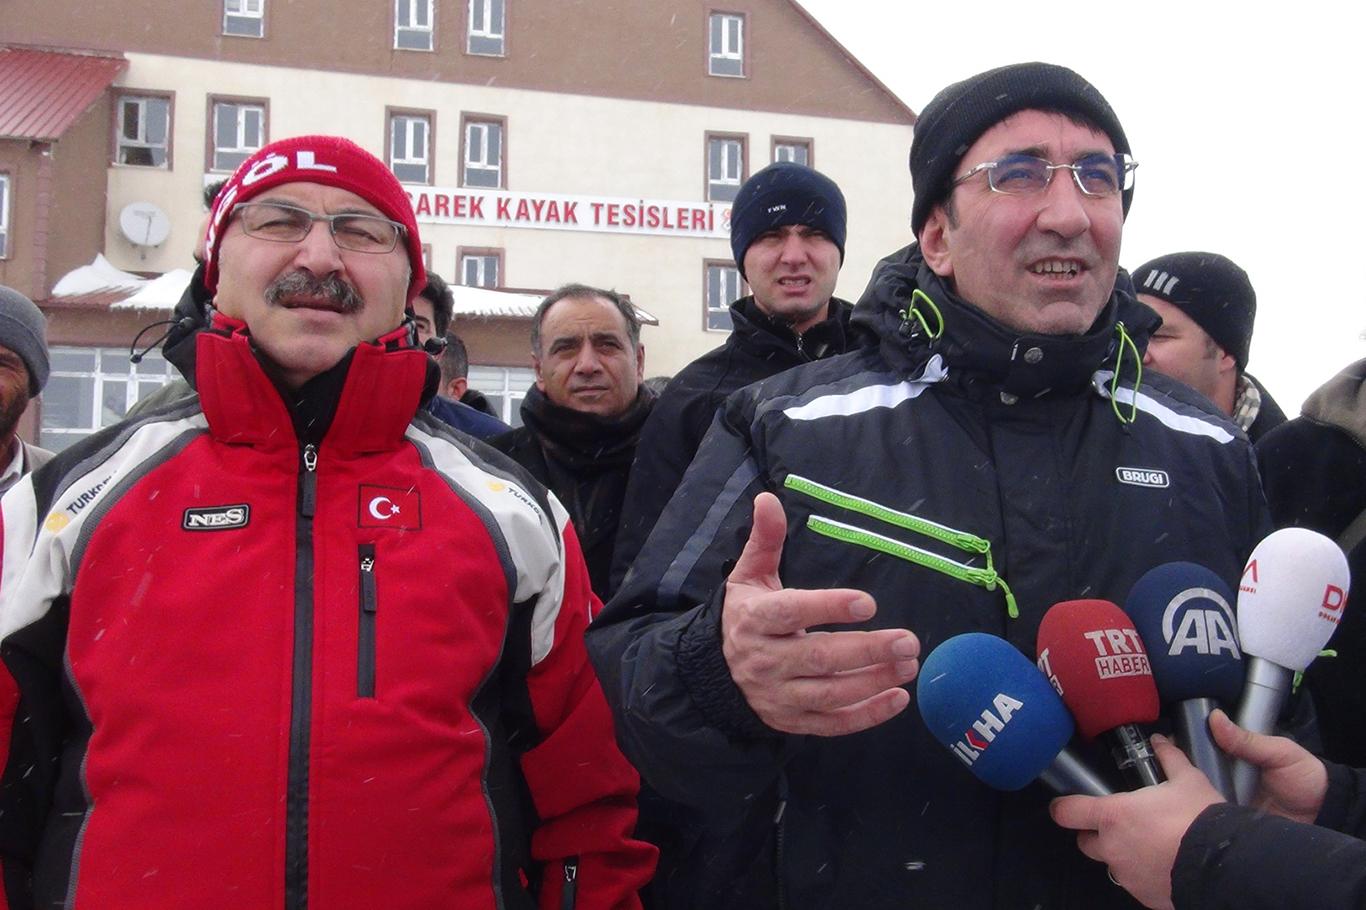 “Hesarek, Türkiye'nin en önemli kayak merkezlerinden biri”